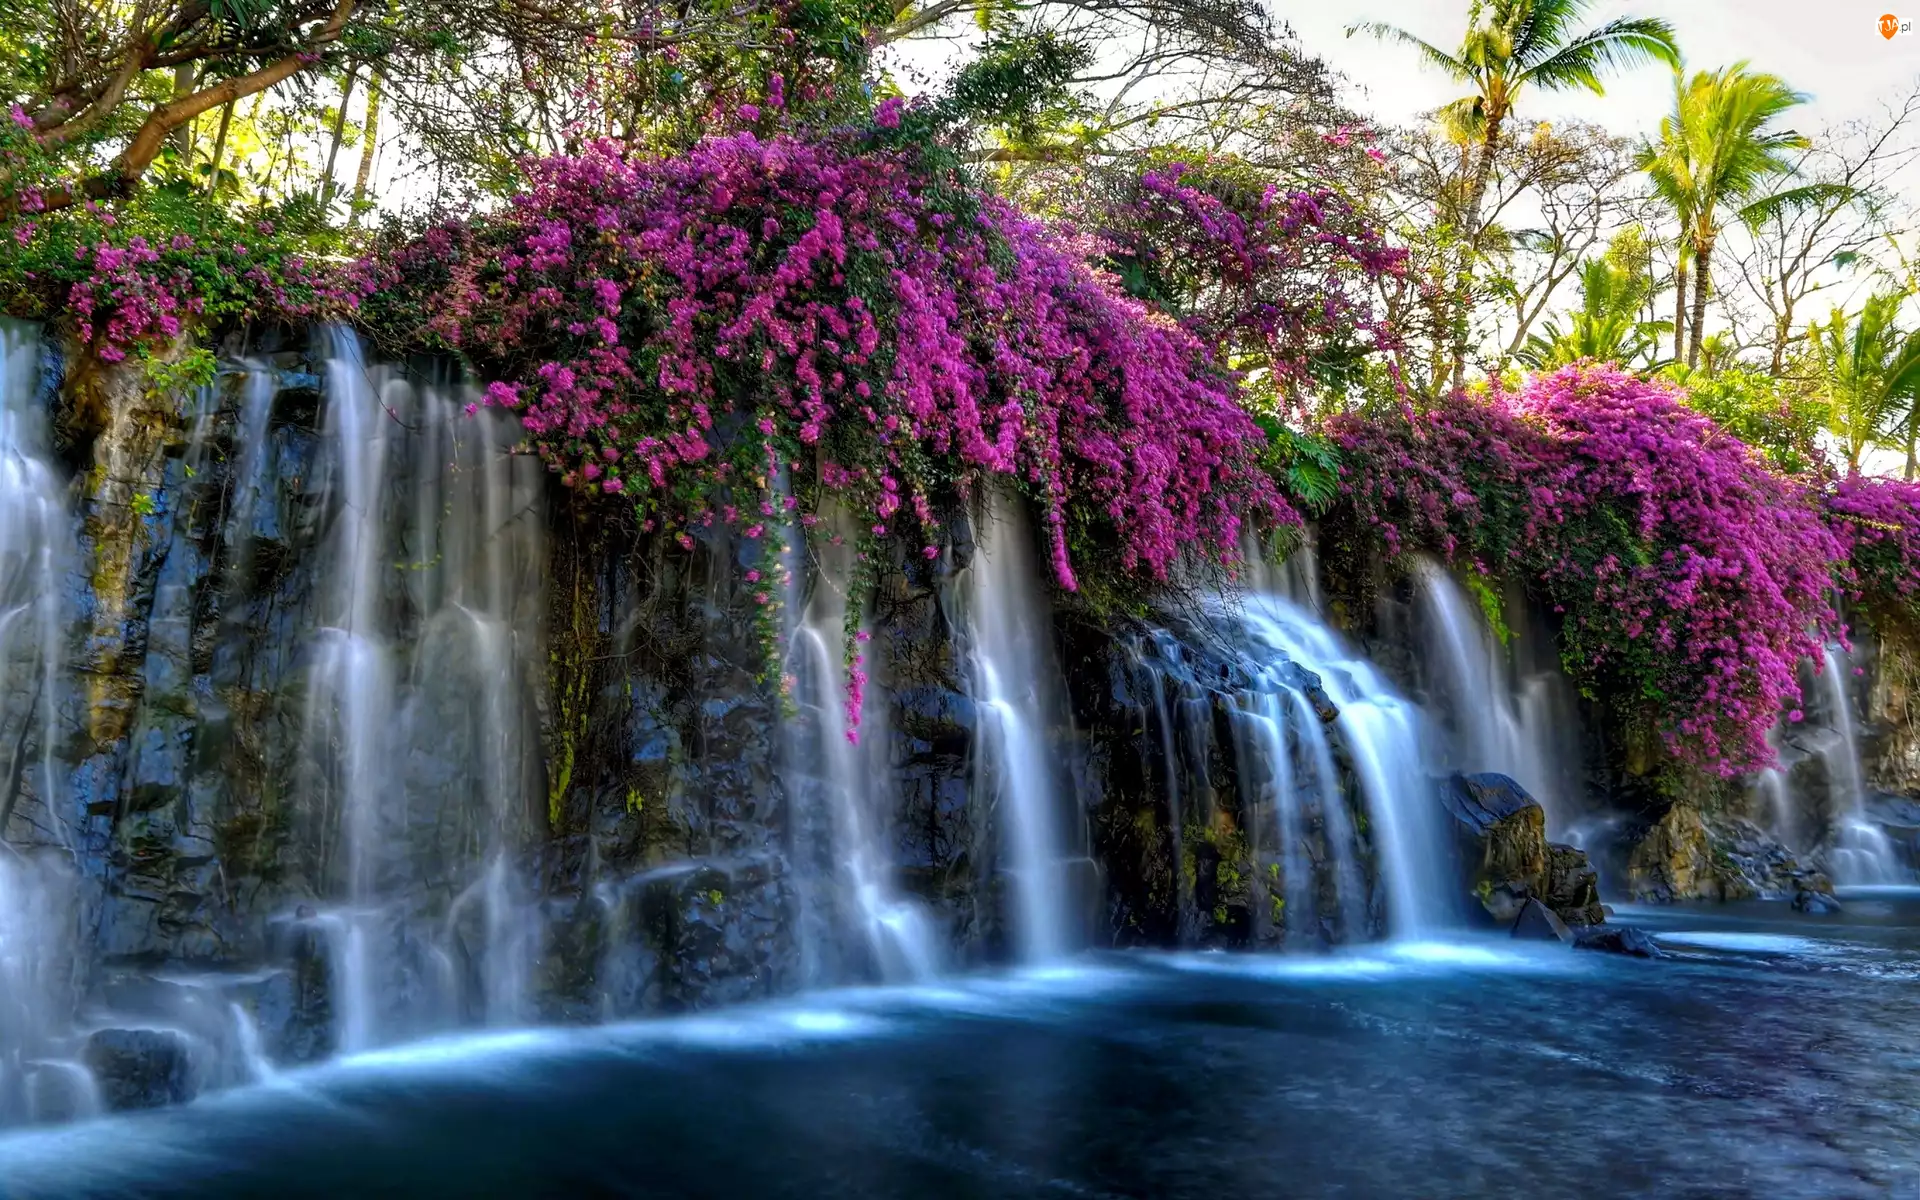 Kwiaty, Wodospad, Purpurowe